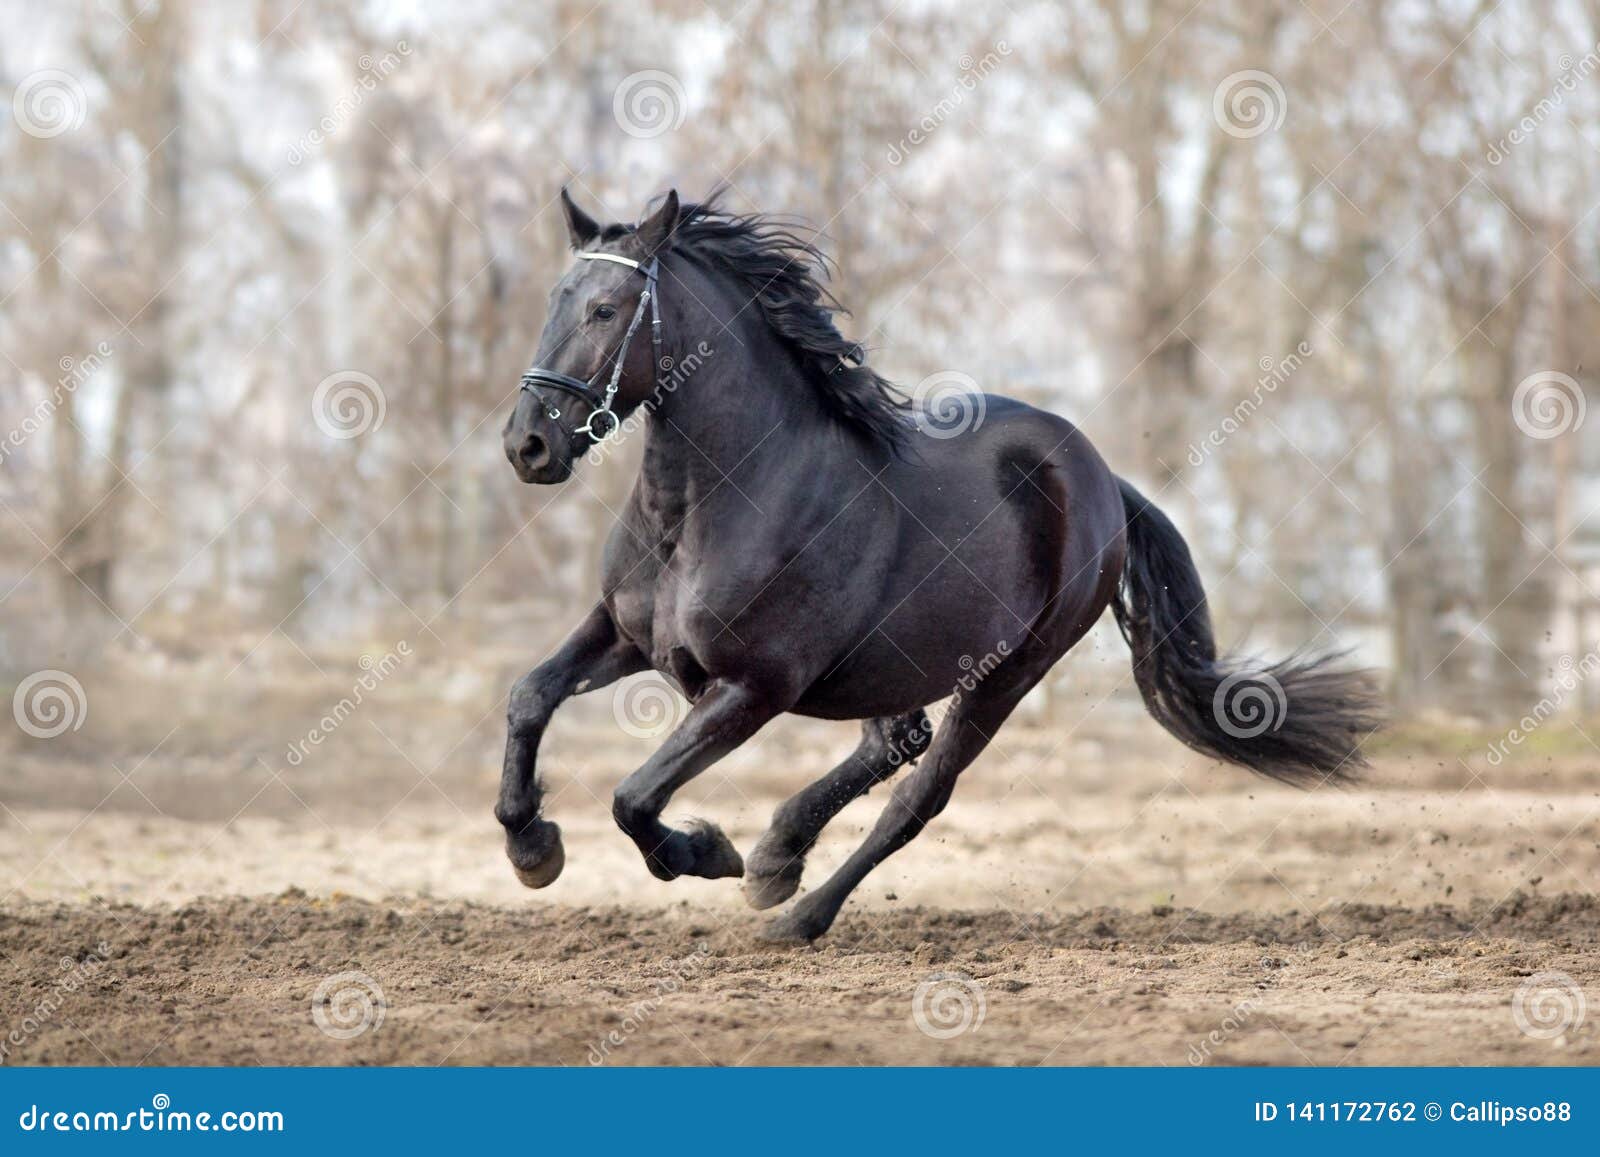 frisian horse gallops